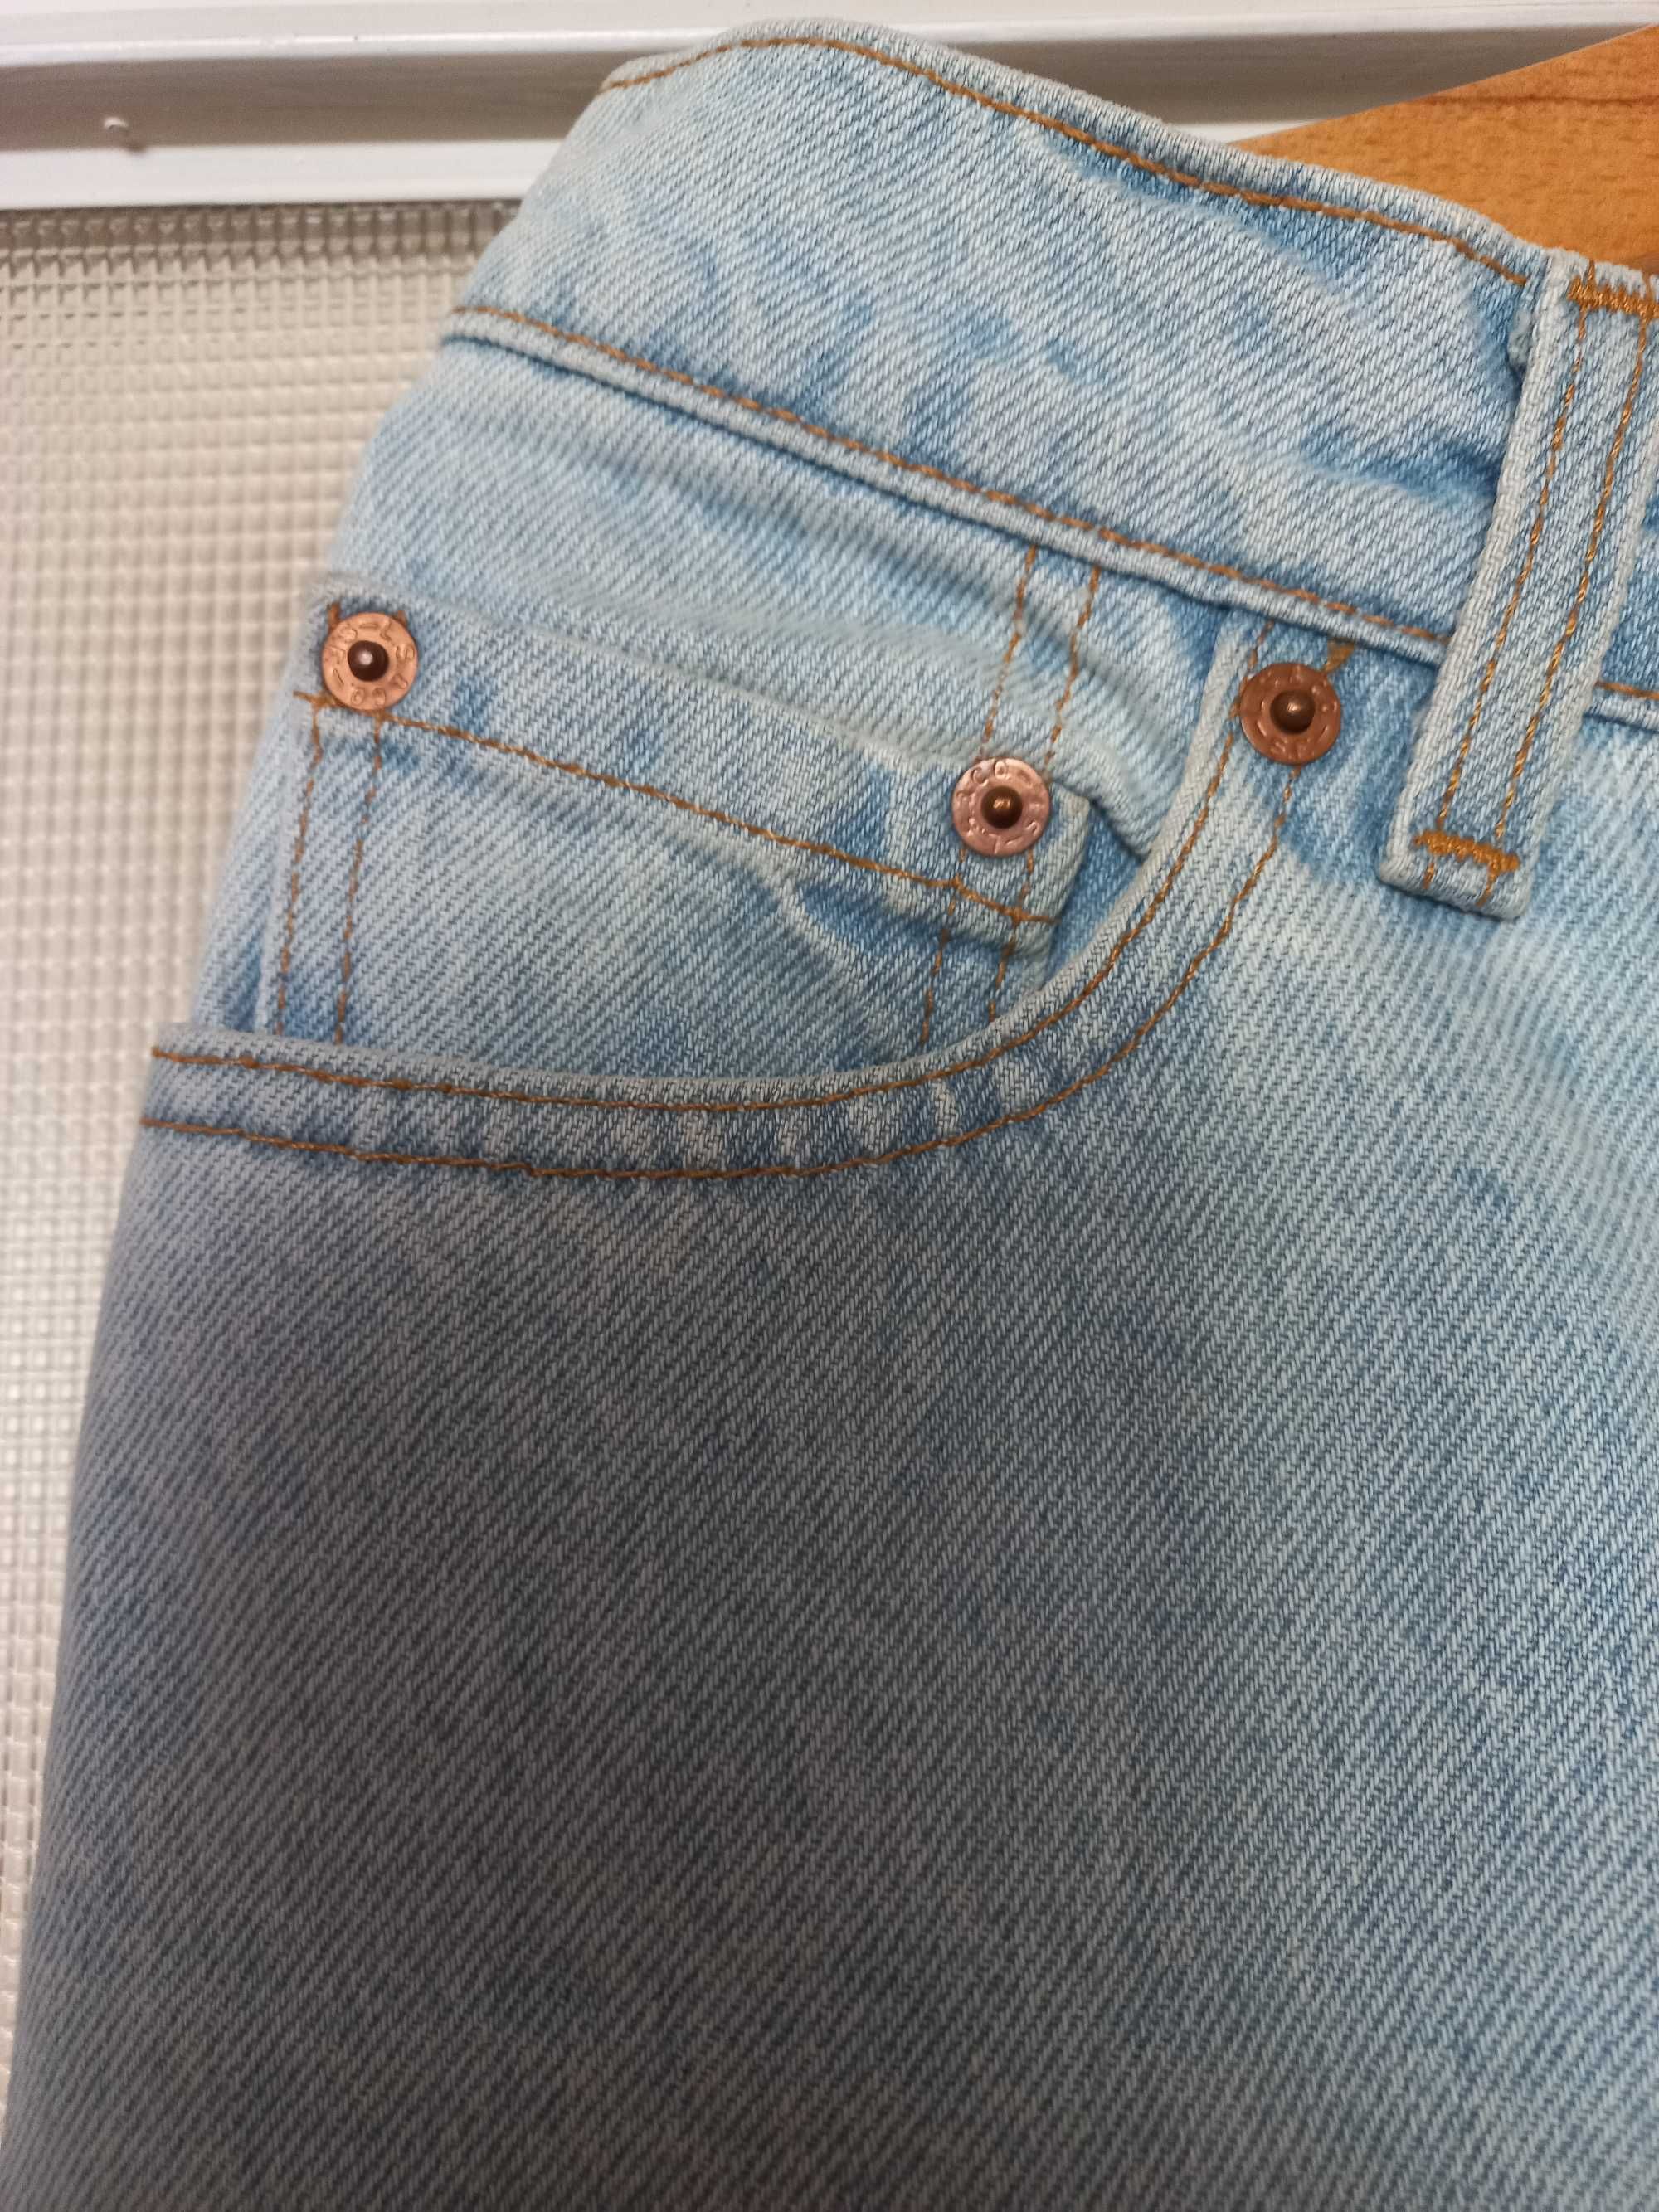 Vindage  Levis spodnie dzinsowe nowe kupione w 92 r. rozm M oryginalne